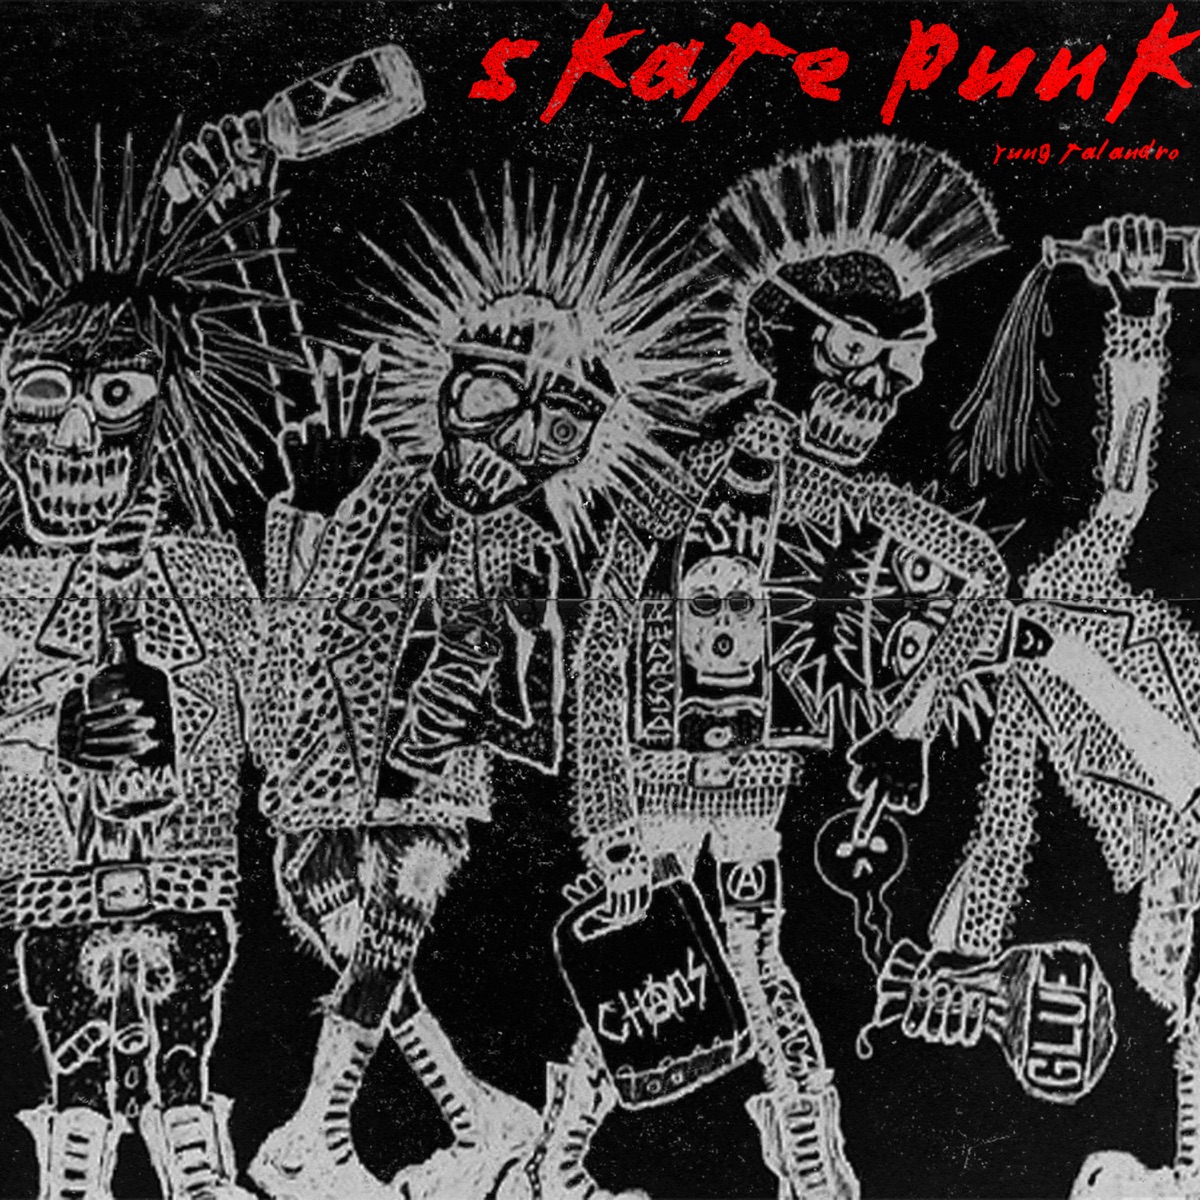 skate punk